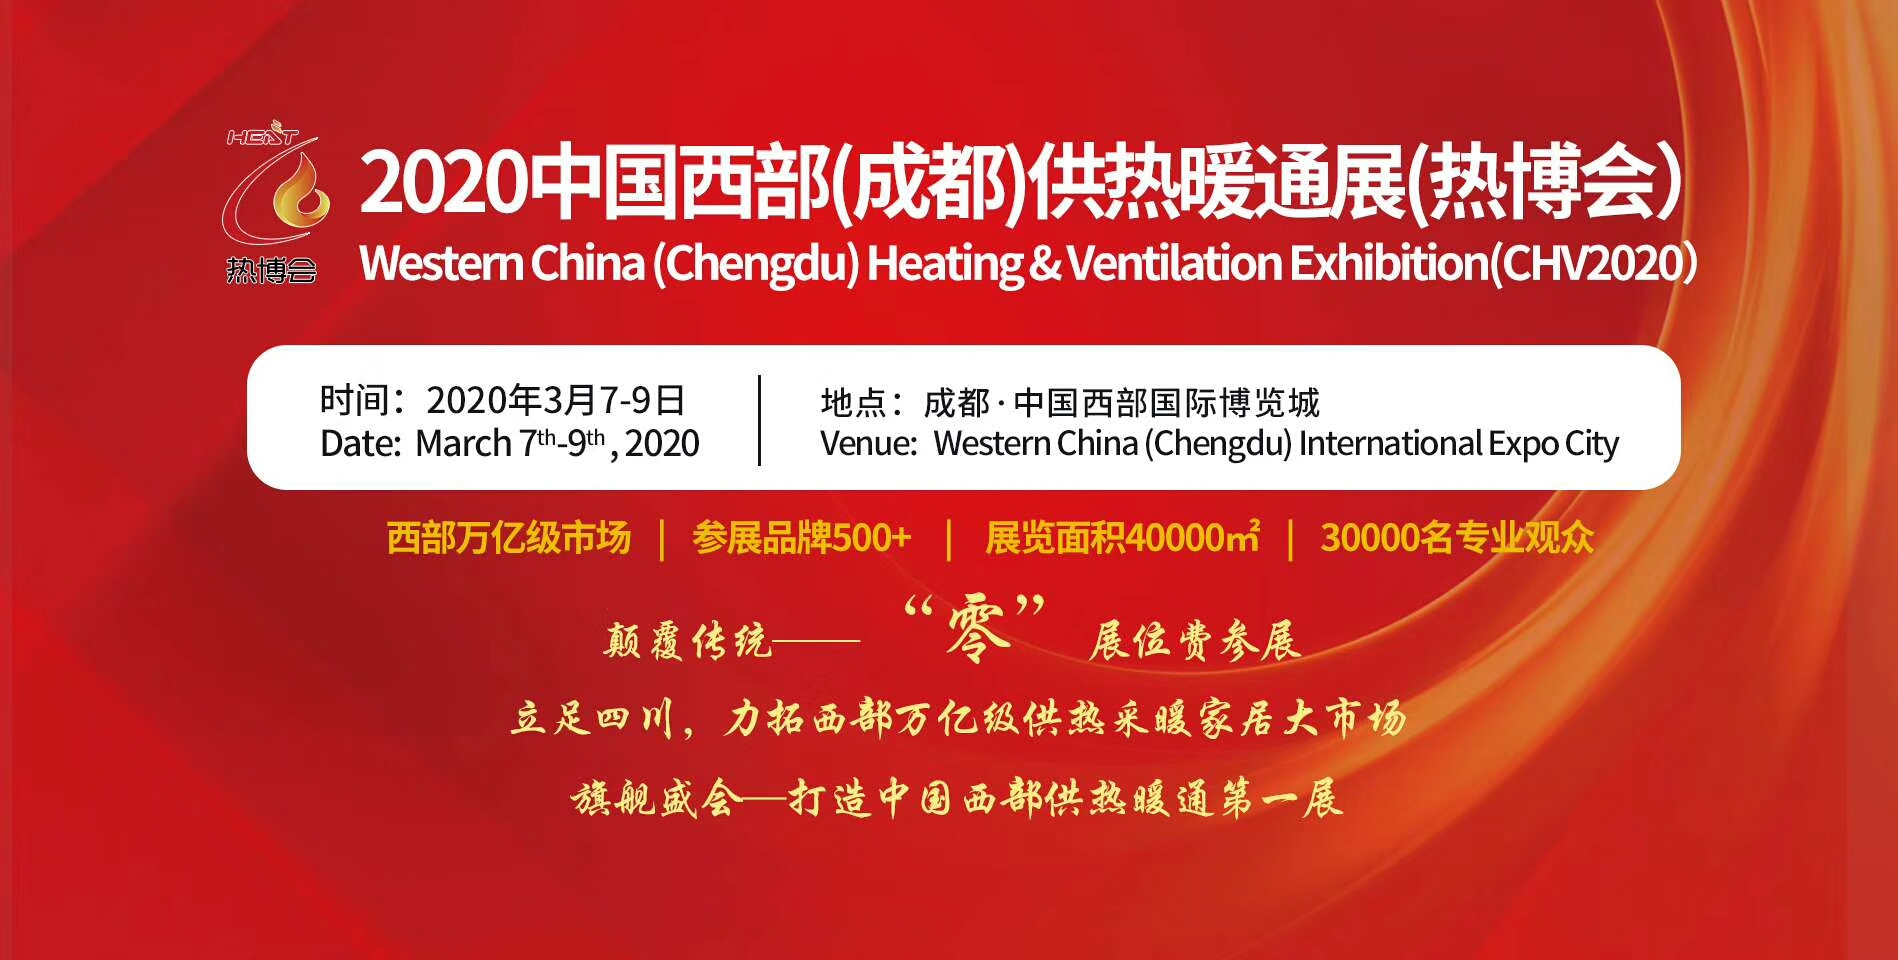 聚焦成都丨2020中国西部烘干、干燥产业博览会明年3月开展